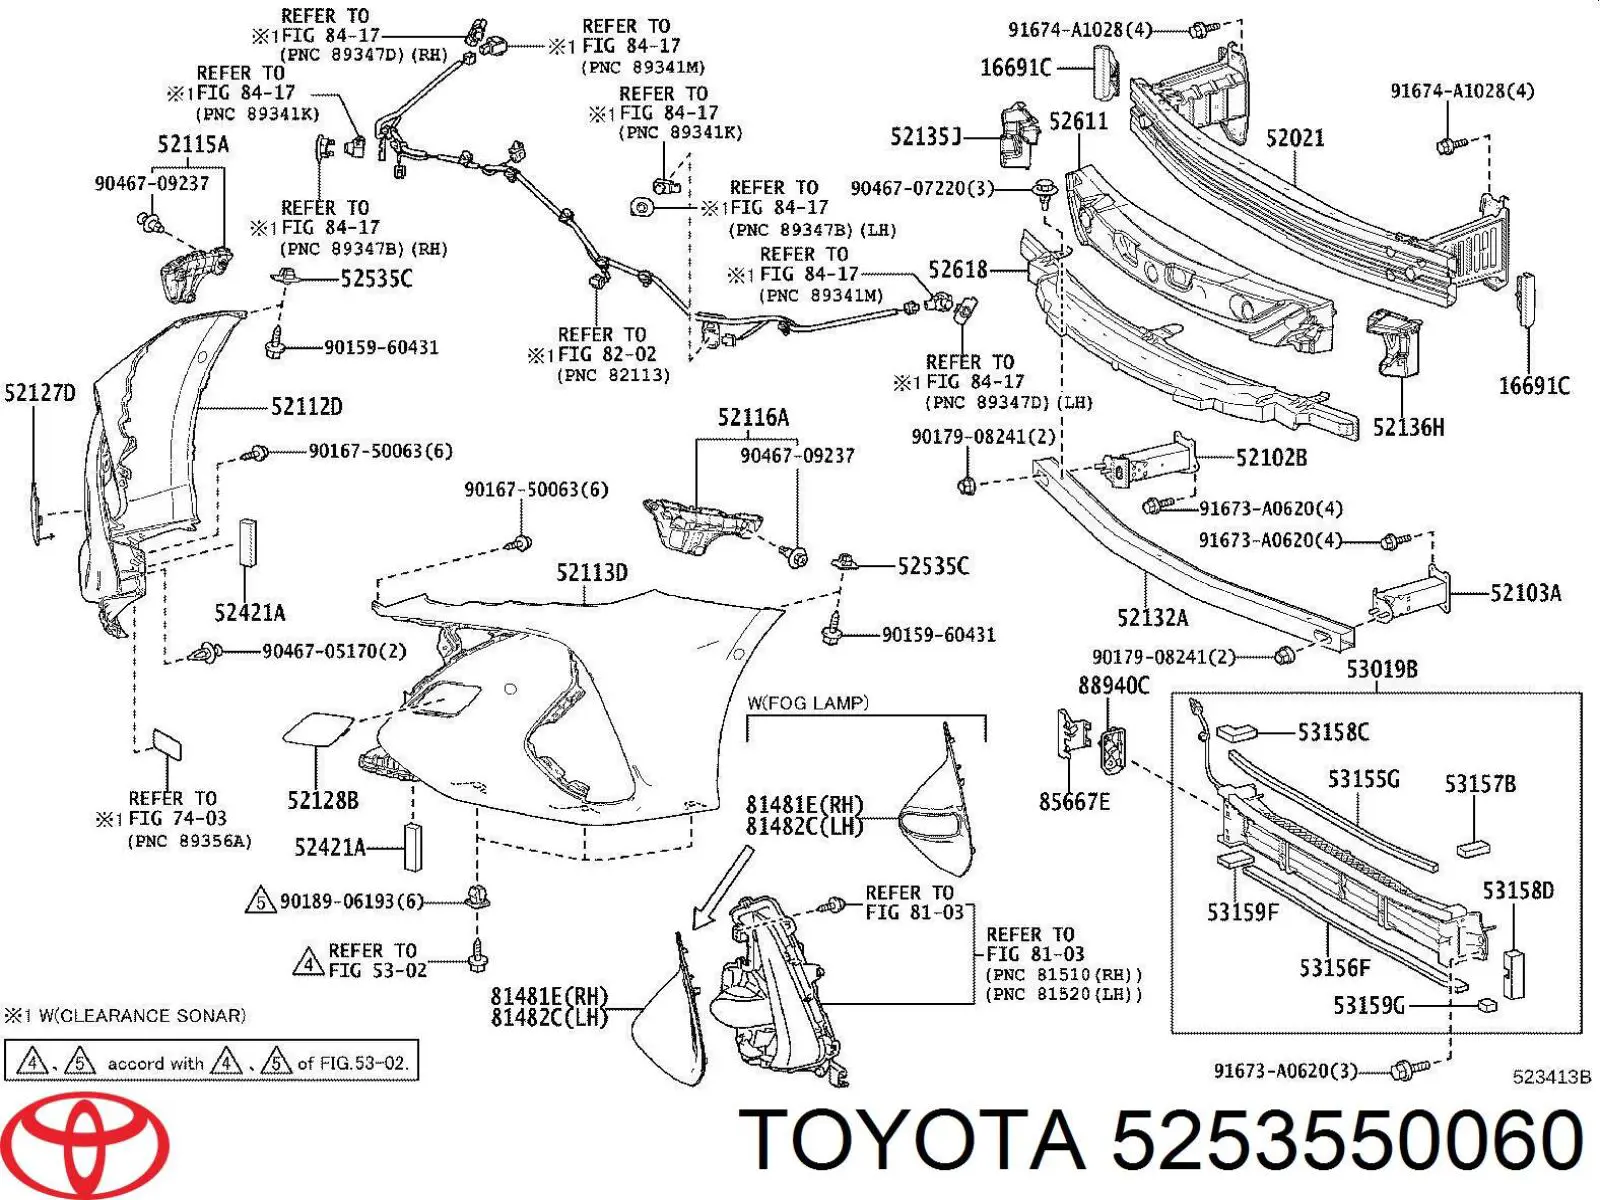 5253550060 Toyota cápsula (prendedor de fixação do pára-choque dianteiro)